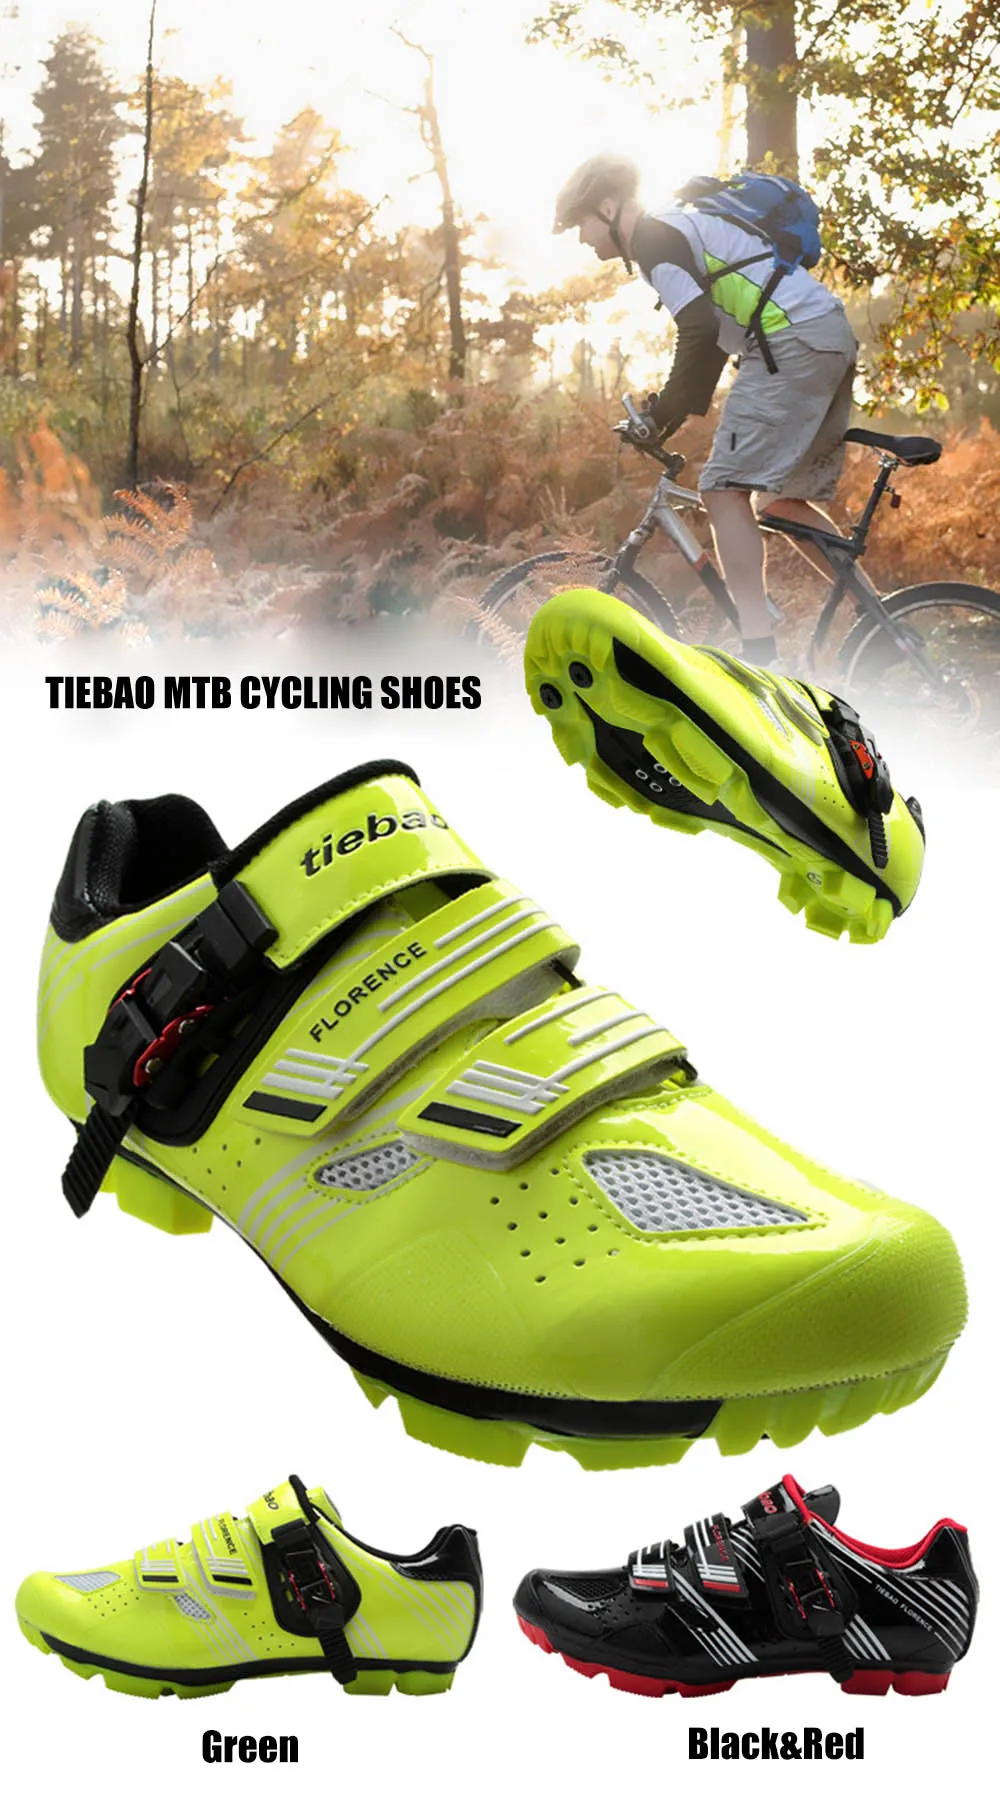 TIEBAO sapato ciclismo mtb велосипедная обувь для верховой езды chaussures vtt homme обувь для горного велосипеда мужские кроссовки Superstar Original Для женщин